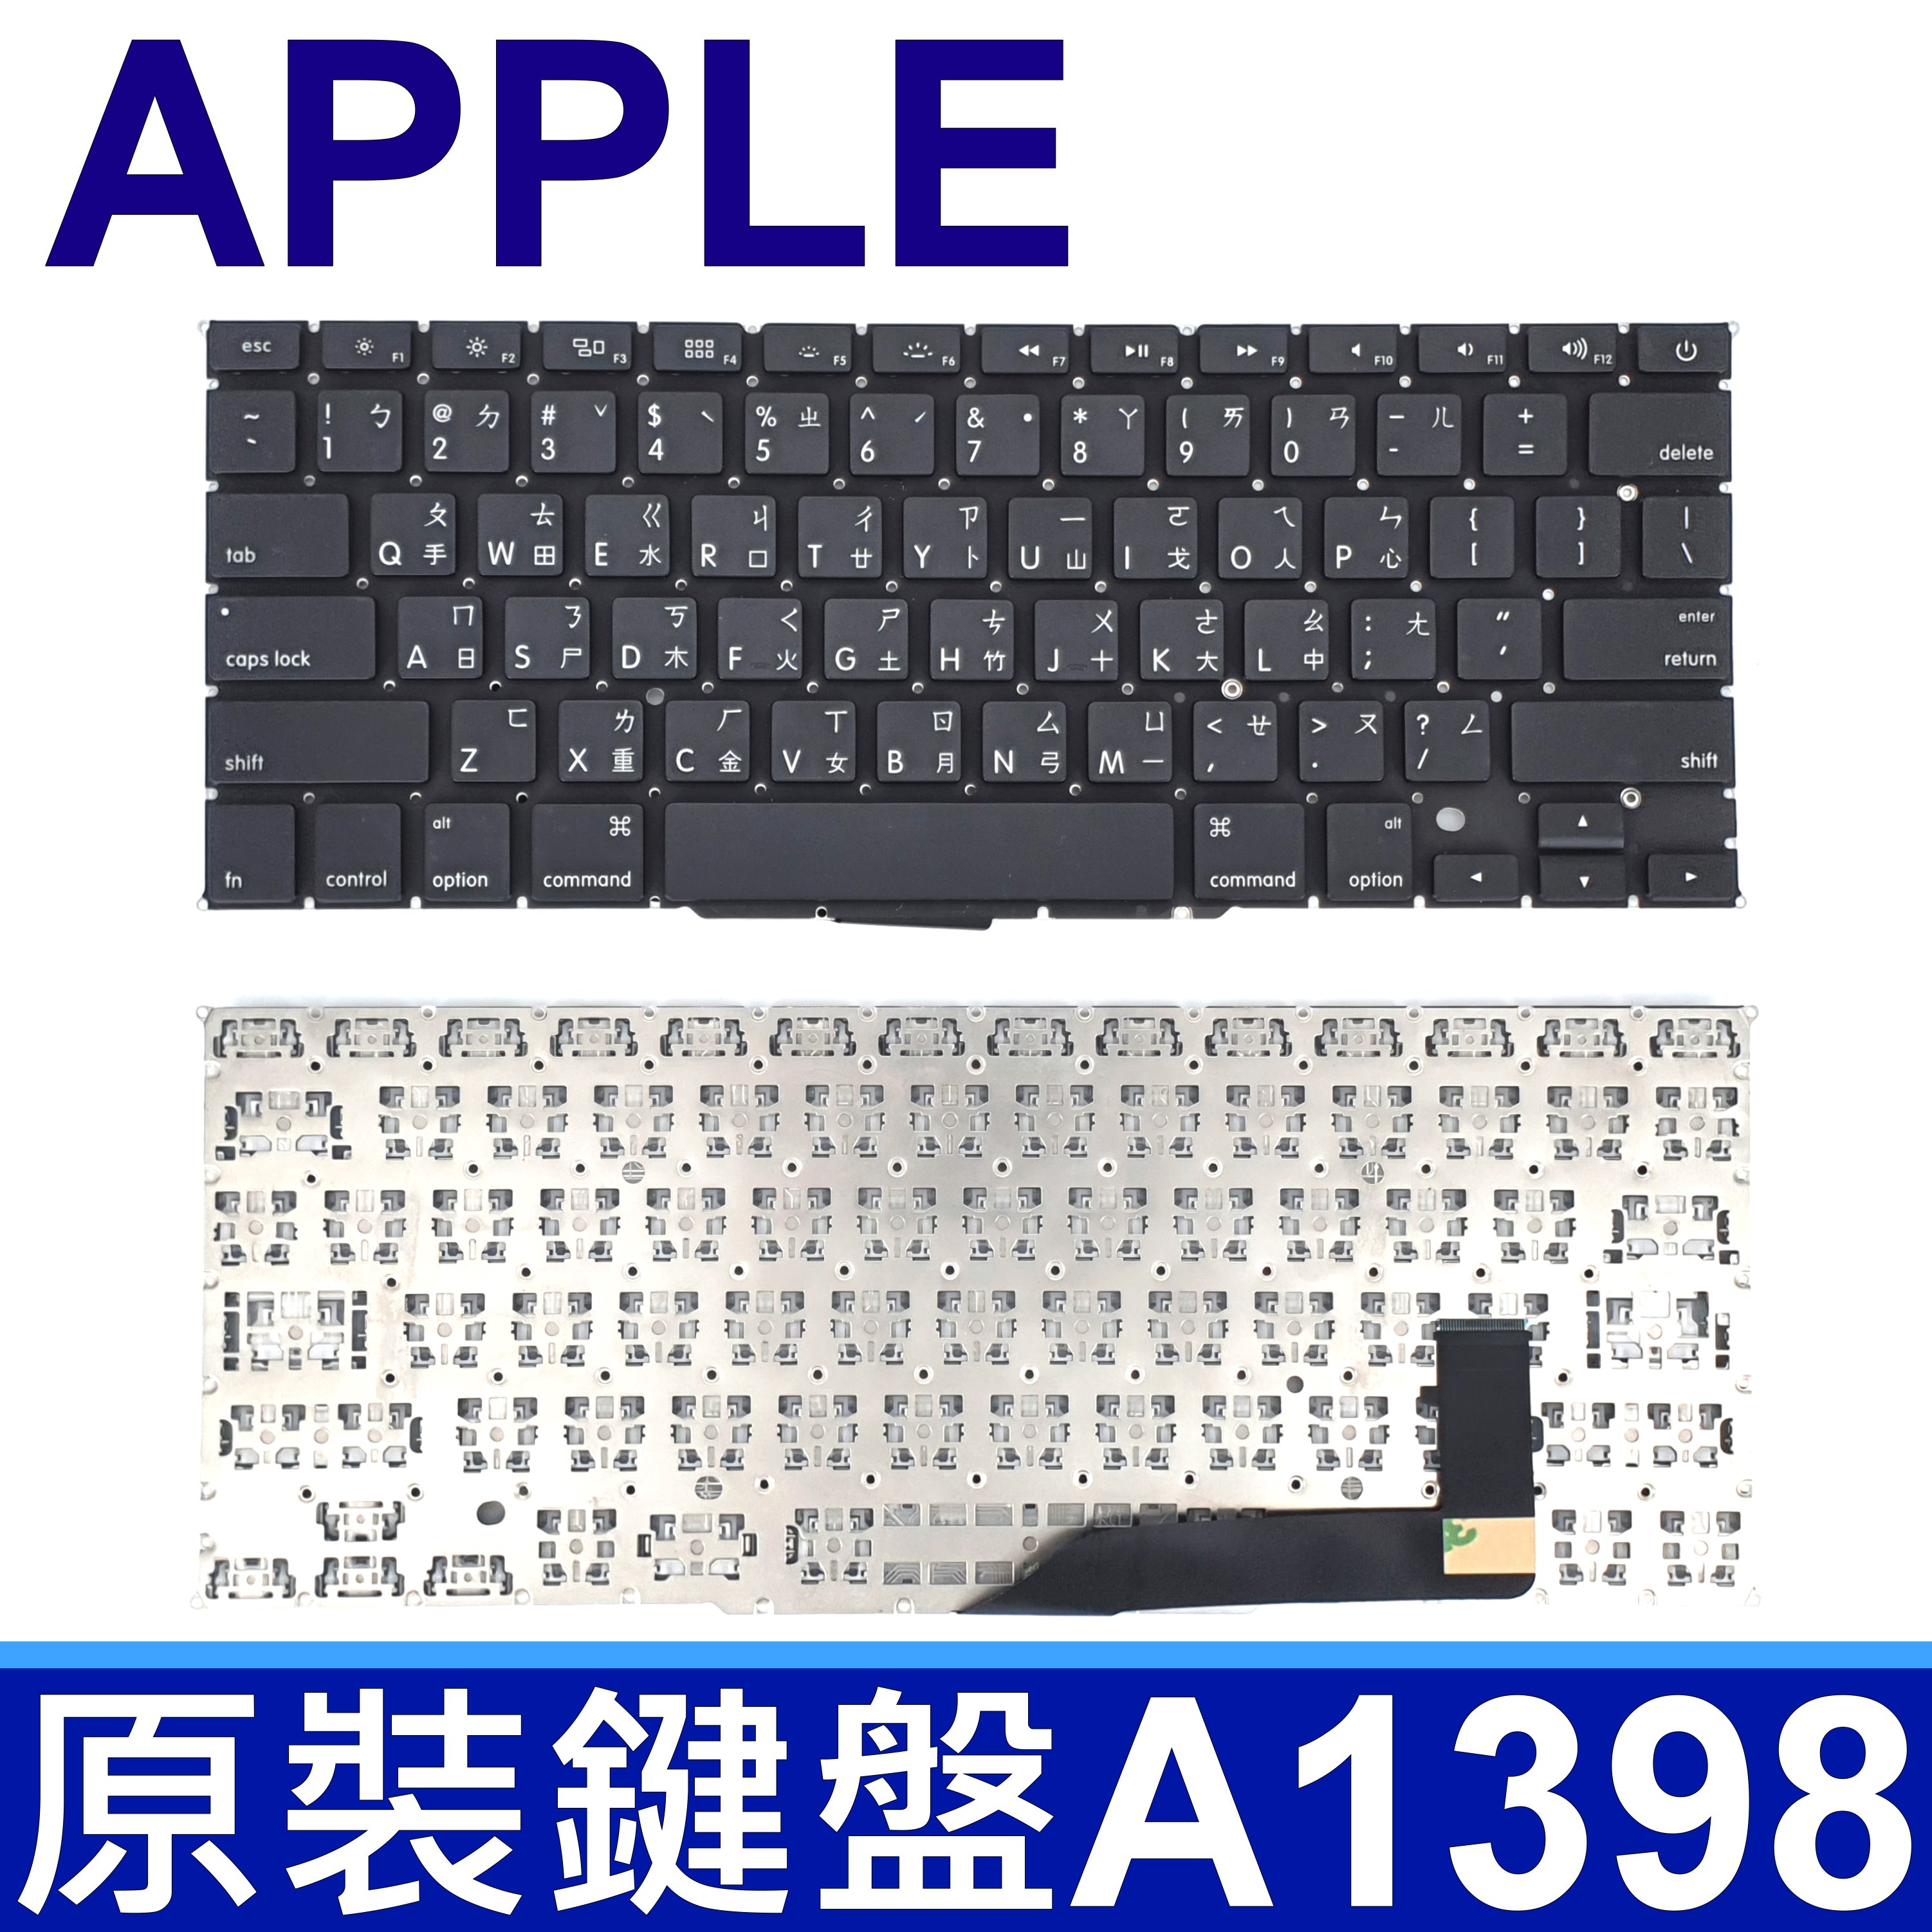 APPLE 蘋果 MacBook Pro Retina A1398 15吋 繁體中文 筆電 鍵盤 MC975xx/A MC976xx/A ME665xx/A ME664xx/A ME294xx/A ME293xx/A MGXC2xx/A MGXA2xx/A